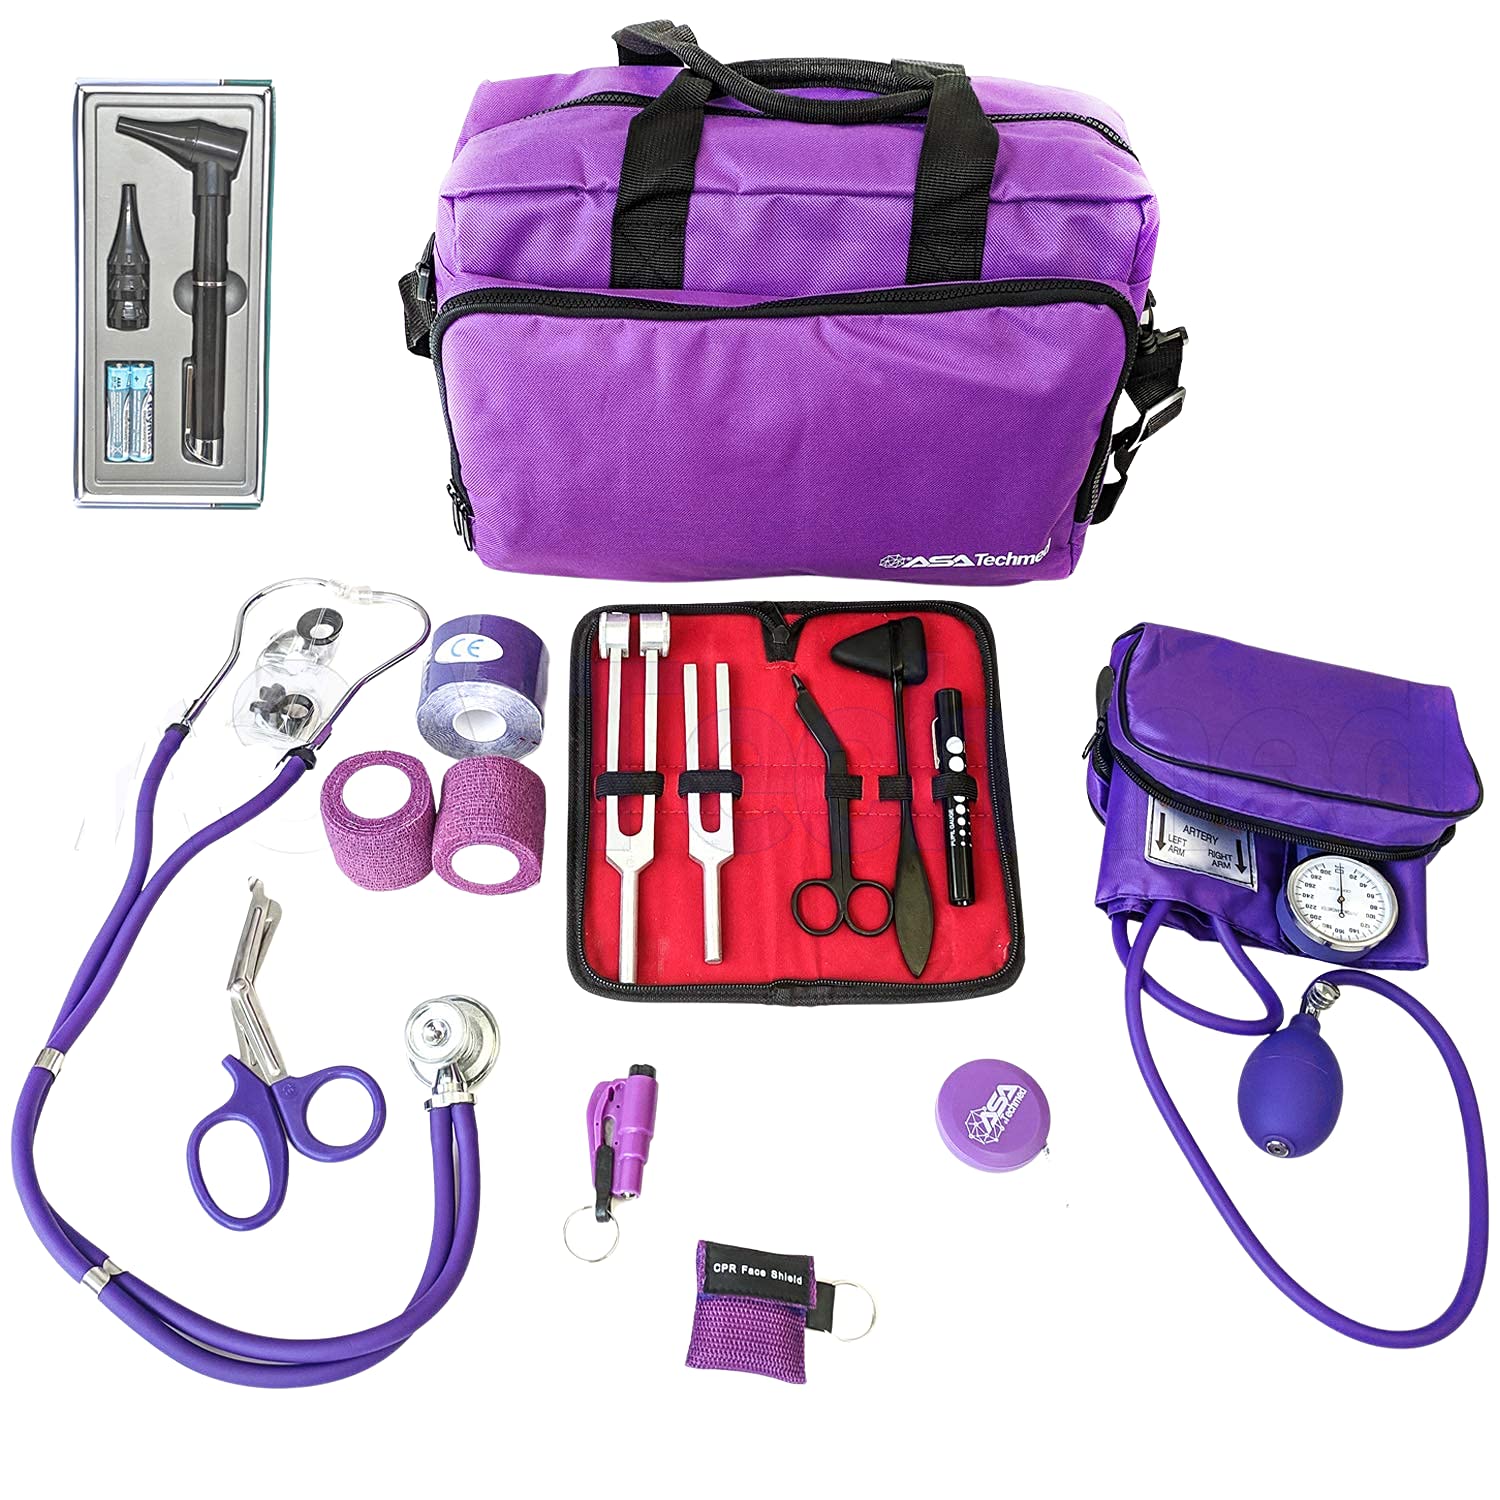 Nursing Kit